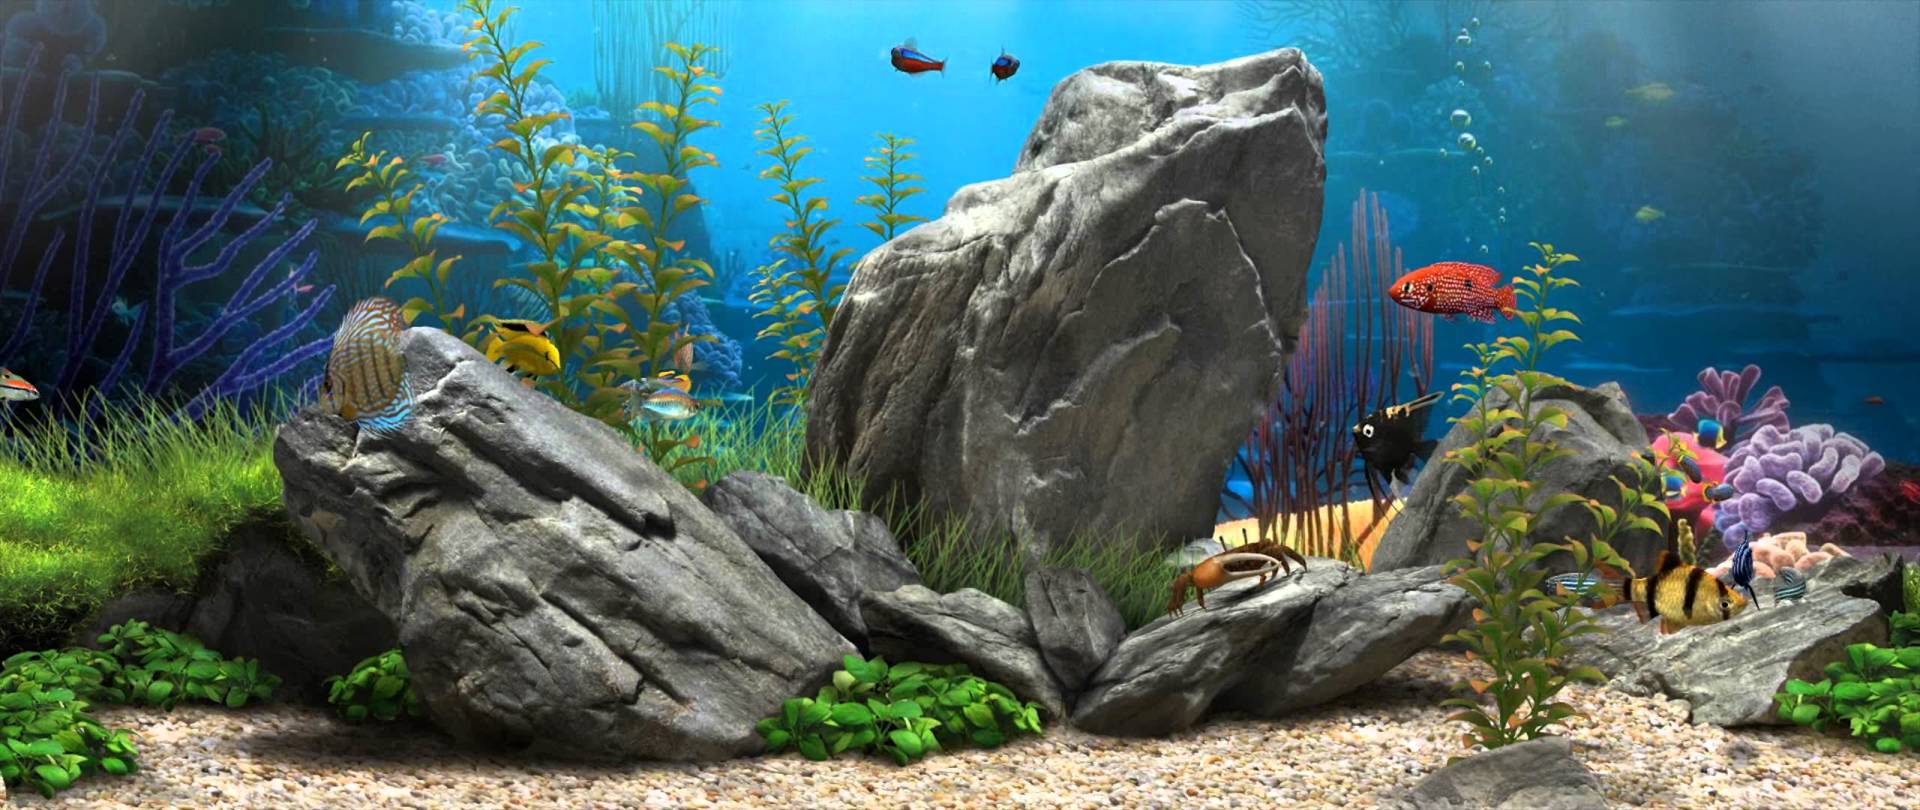 dream aquarium free